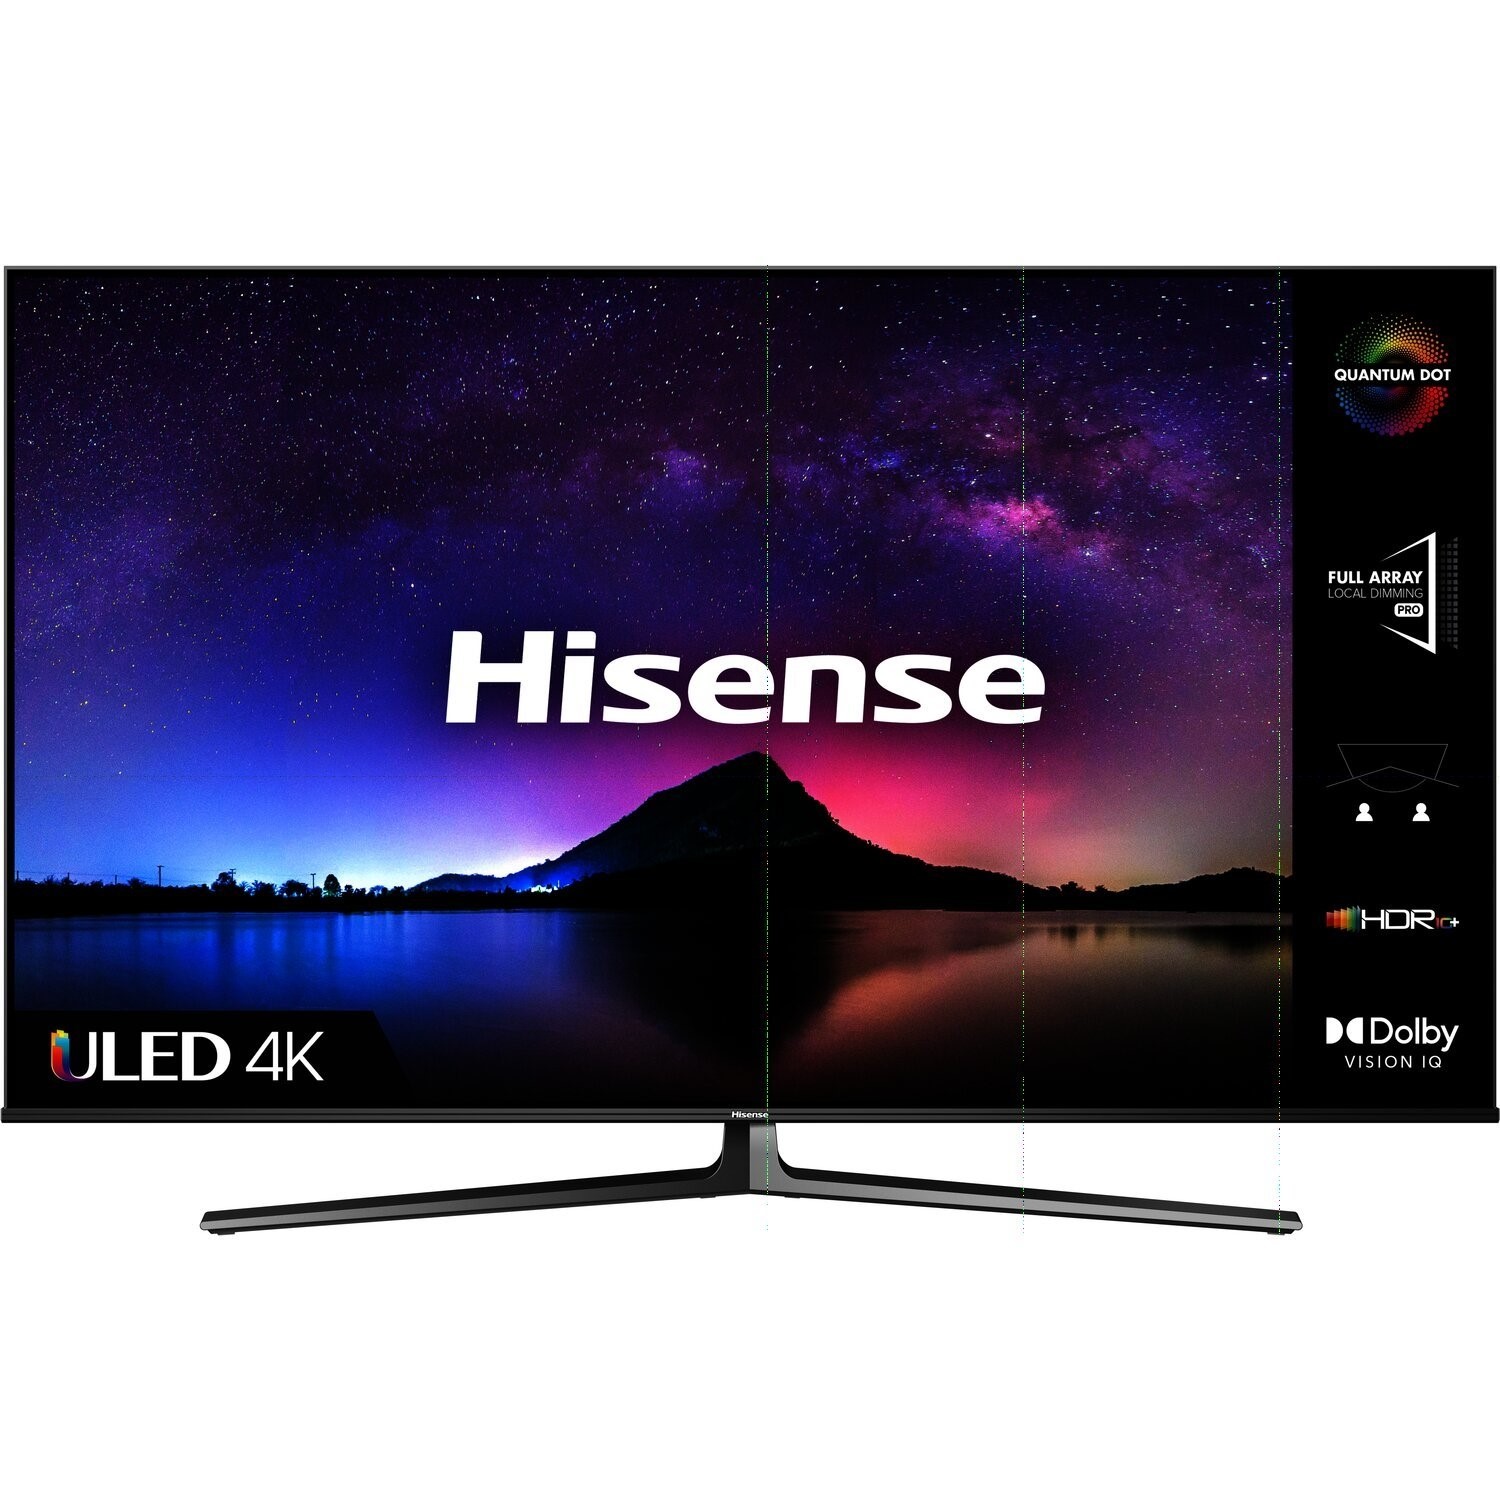 Hisense U8G 55 Inch QLED 4K Smart TV